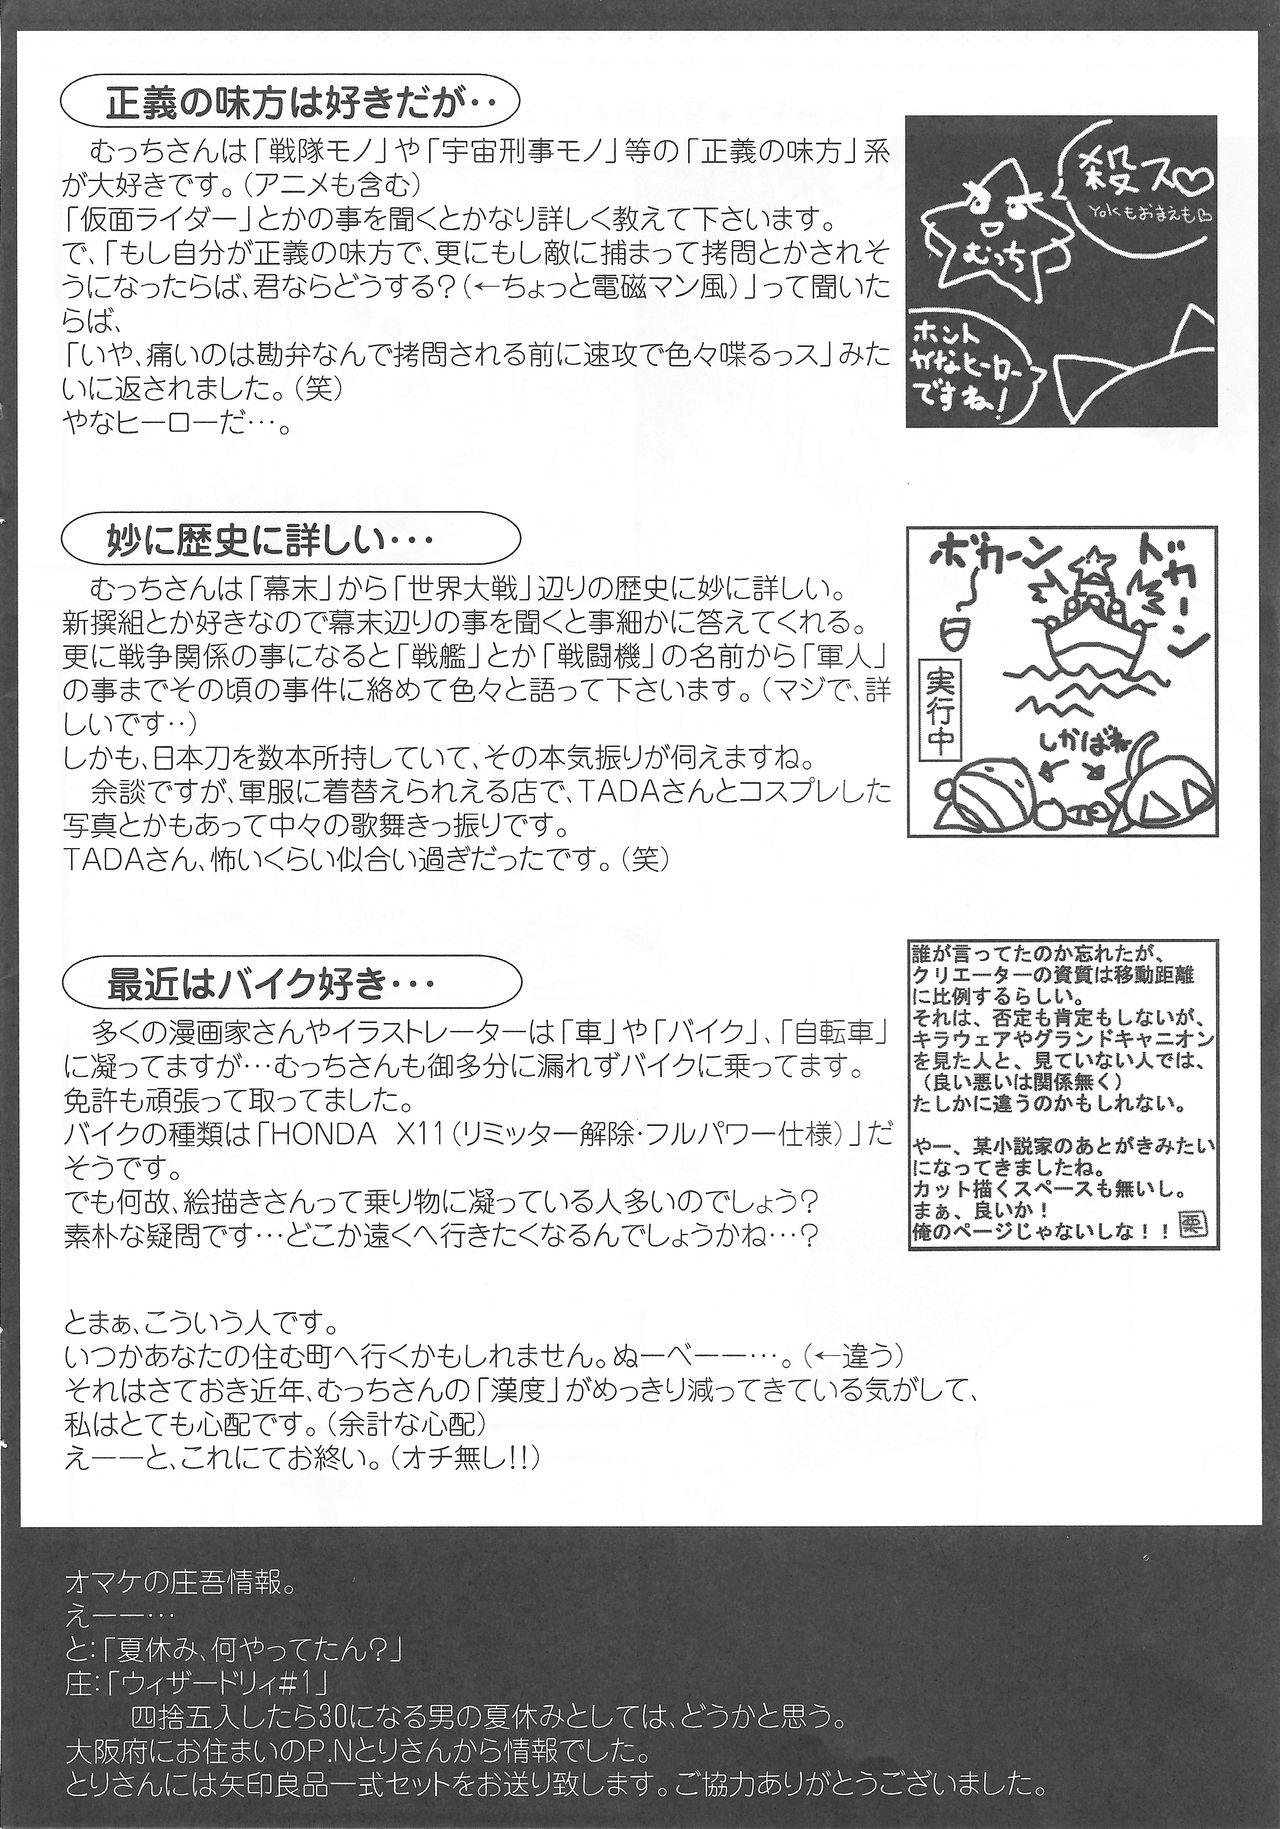 Arisu no Denchi Bakudan Vol. 13 24